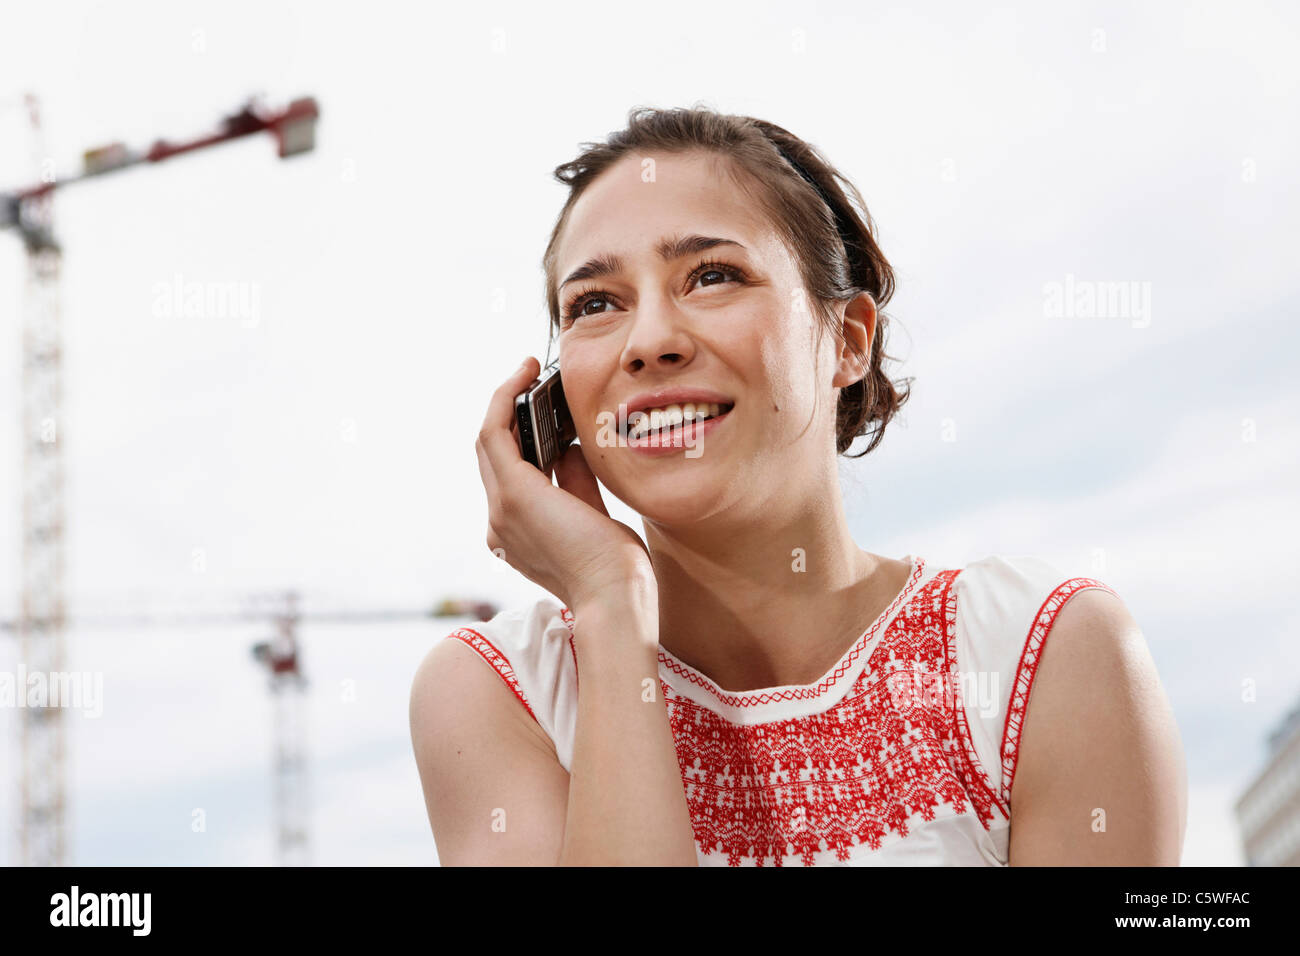 Germania, Berlino, giovane donna tramite telefono cellulare, ritratto, close-up Foto Stock